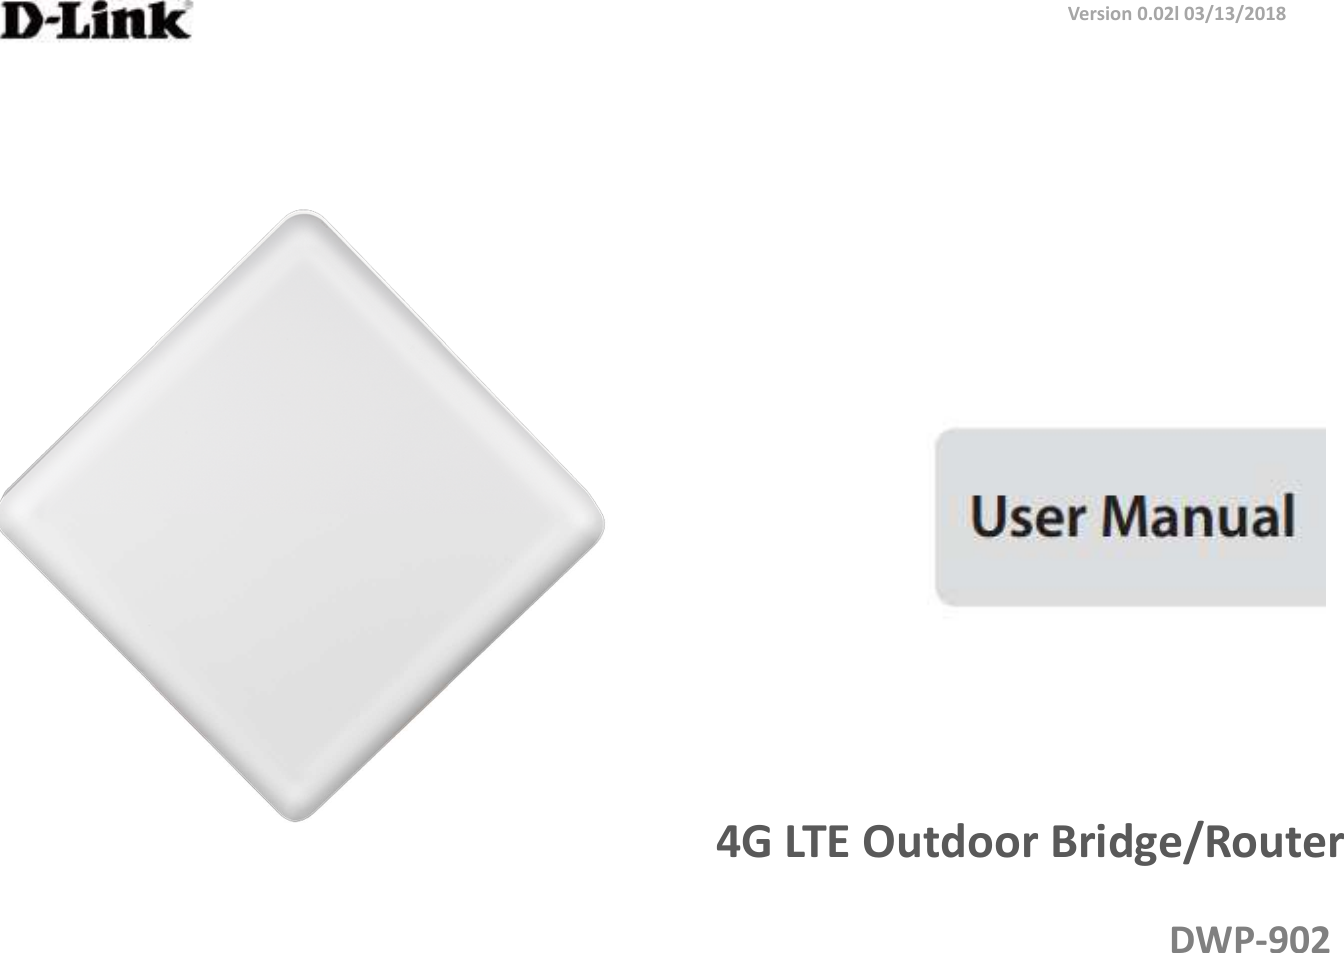  4G LTE Outdoor Bridge/Router DWP-902 Version 0.02l 03/13/2018 